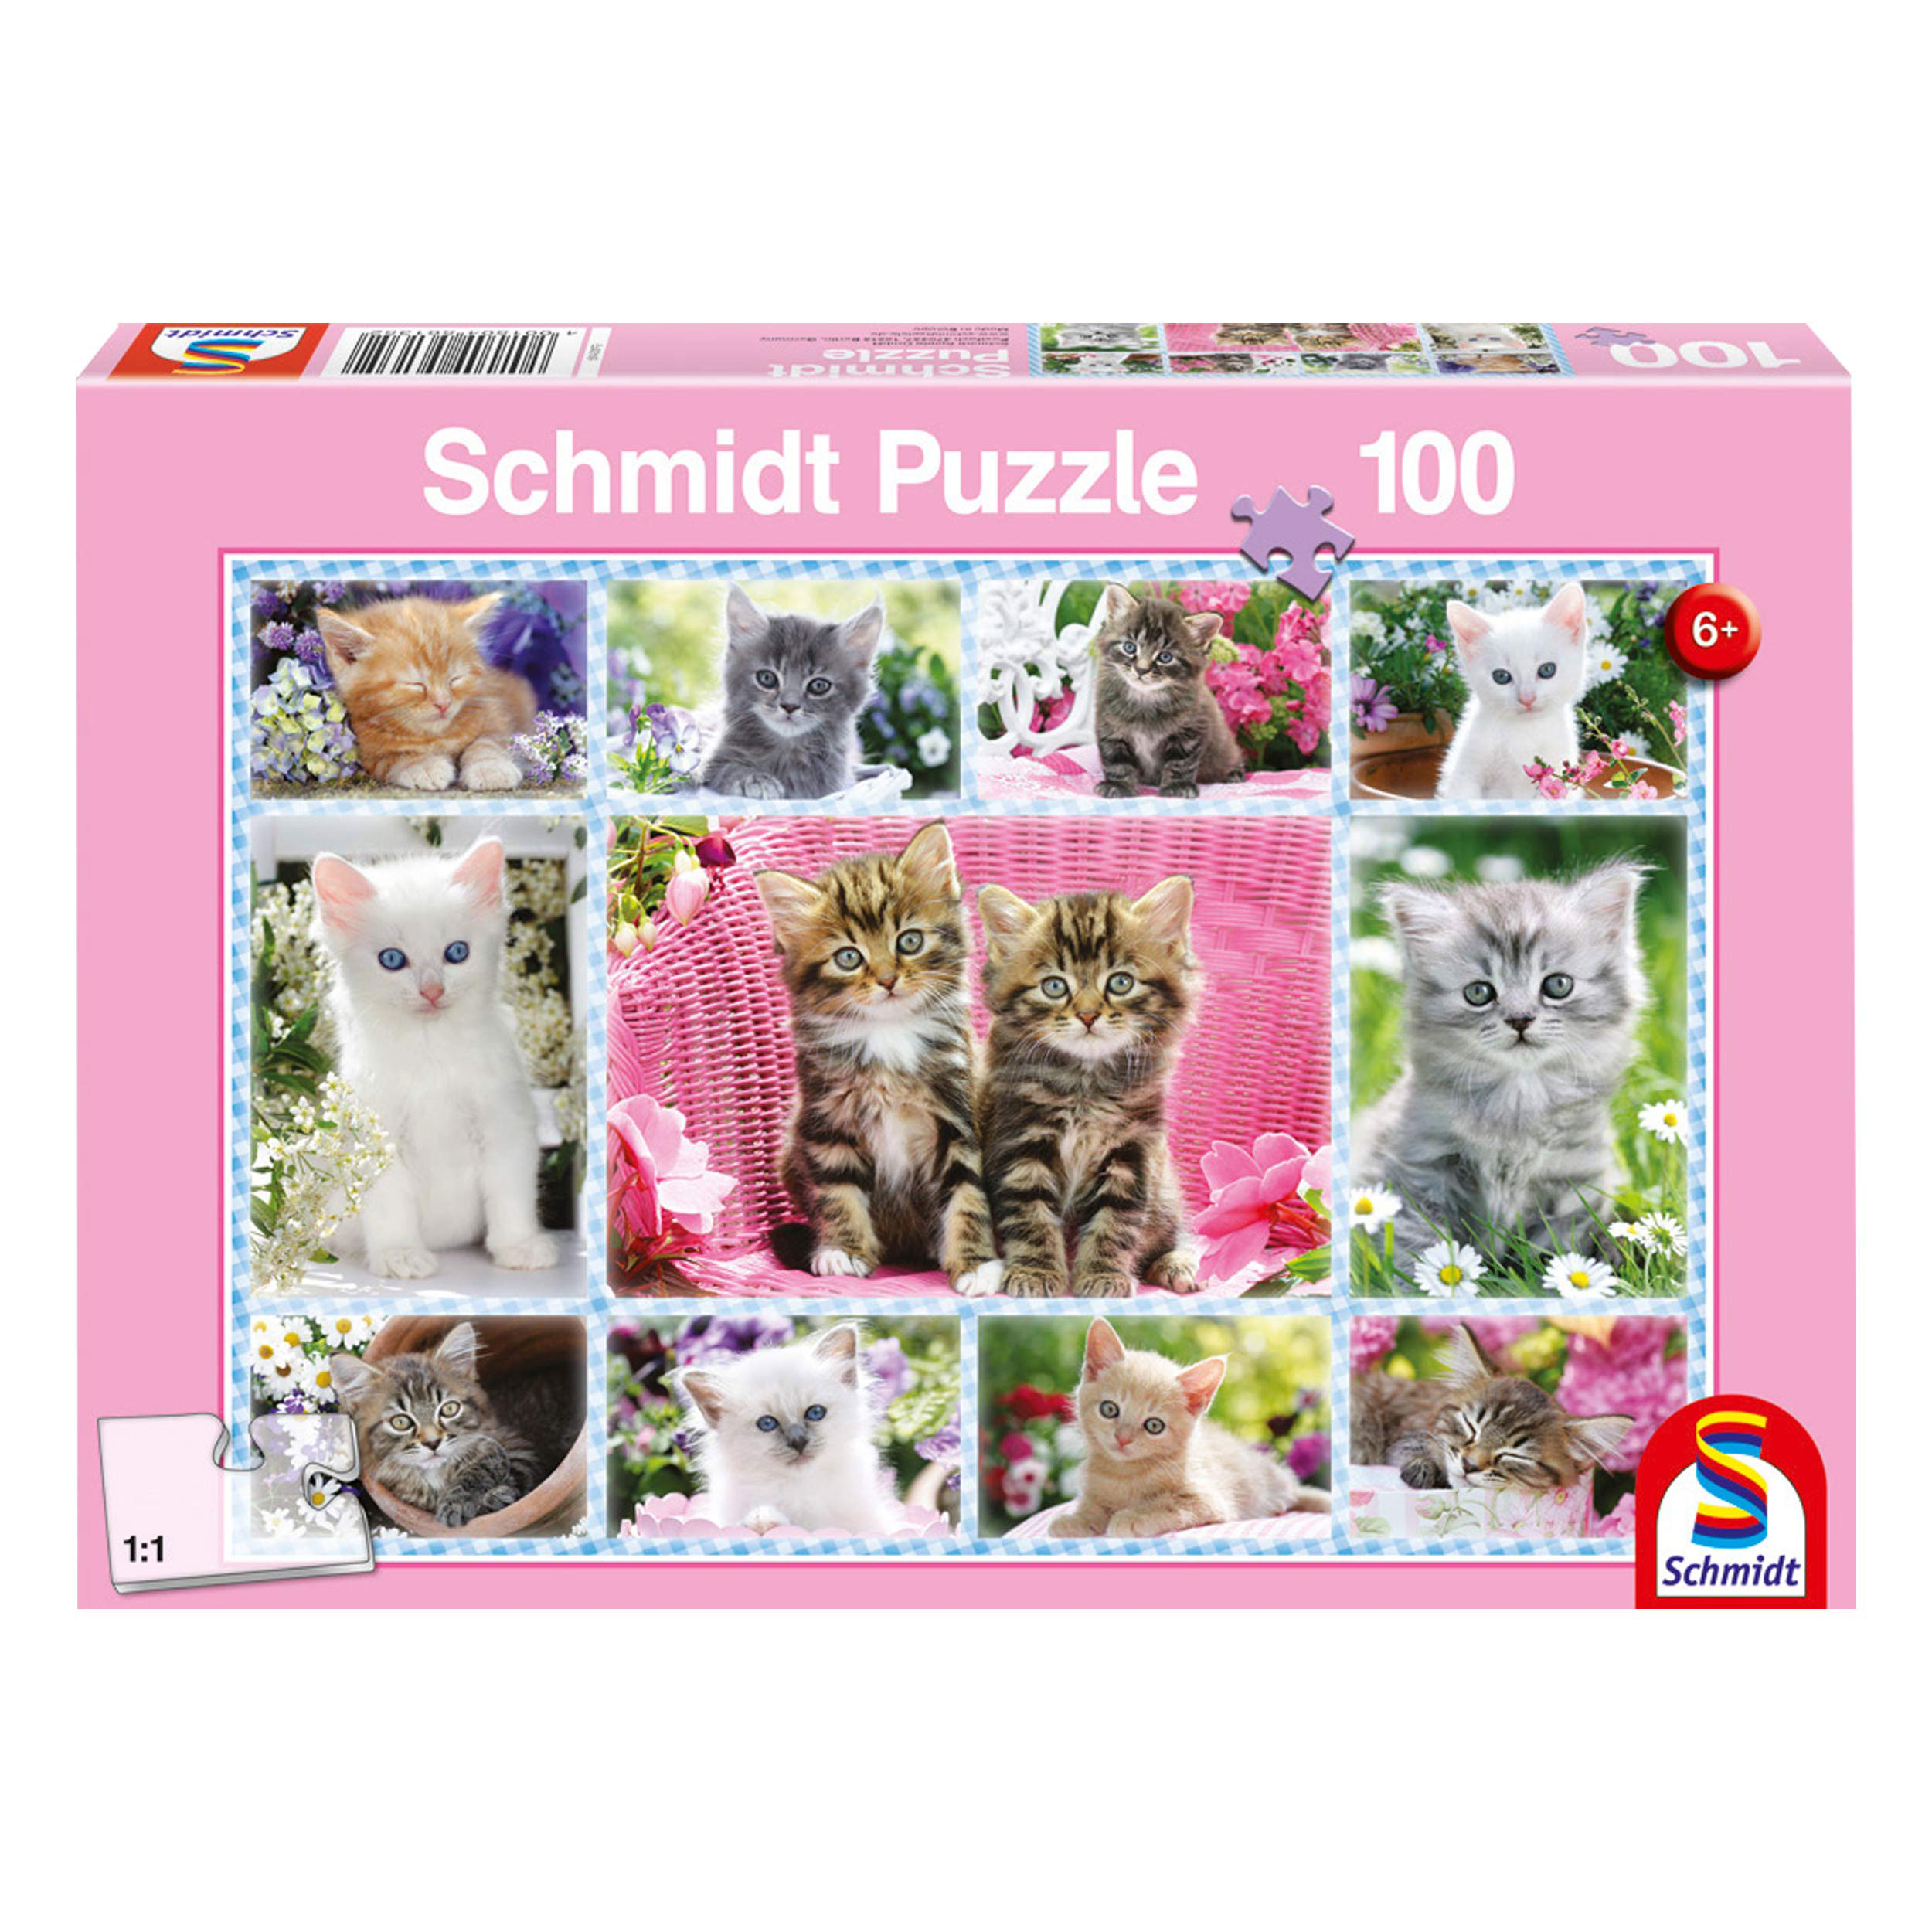 SCHMIDT Teile Puzzle Puzzle SPIELE - 100 Katzenbabys